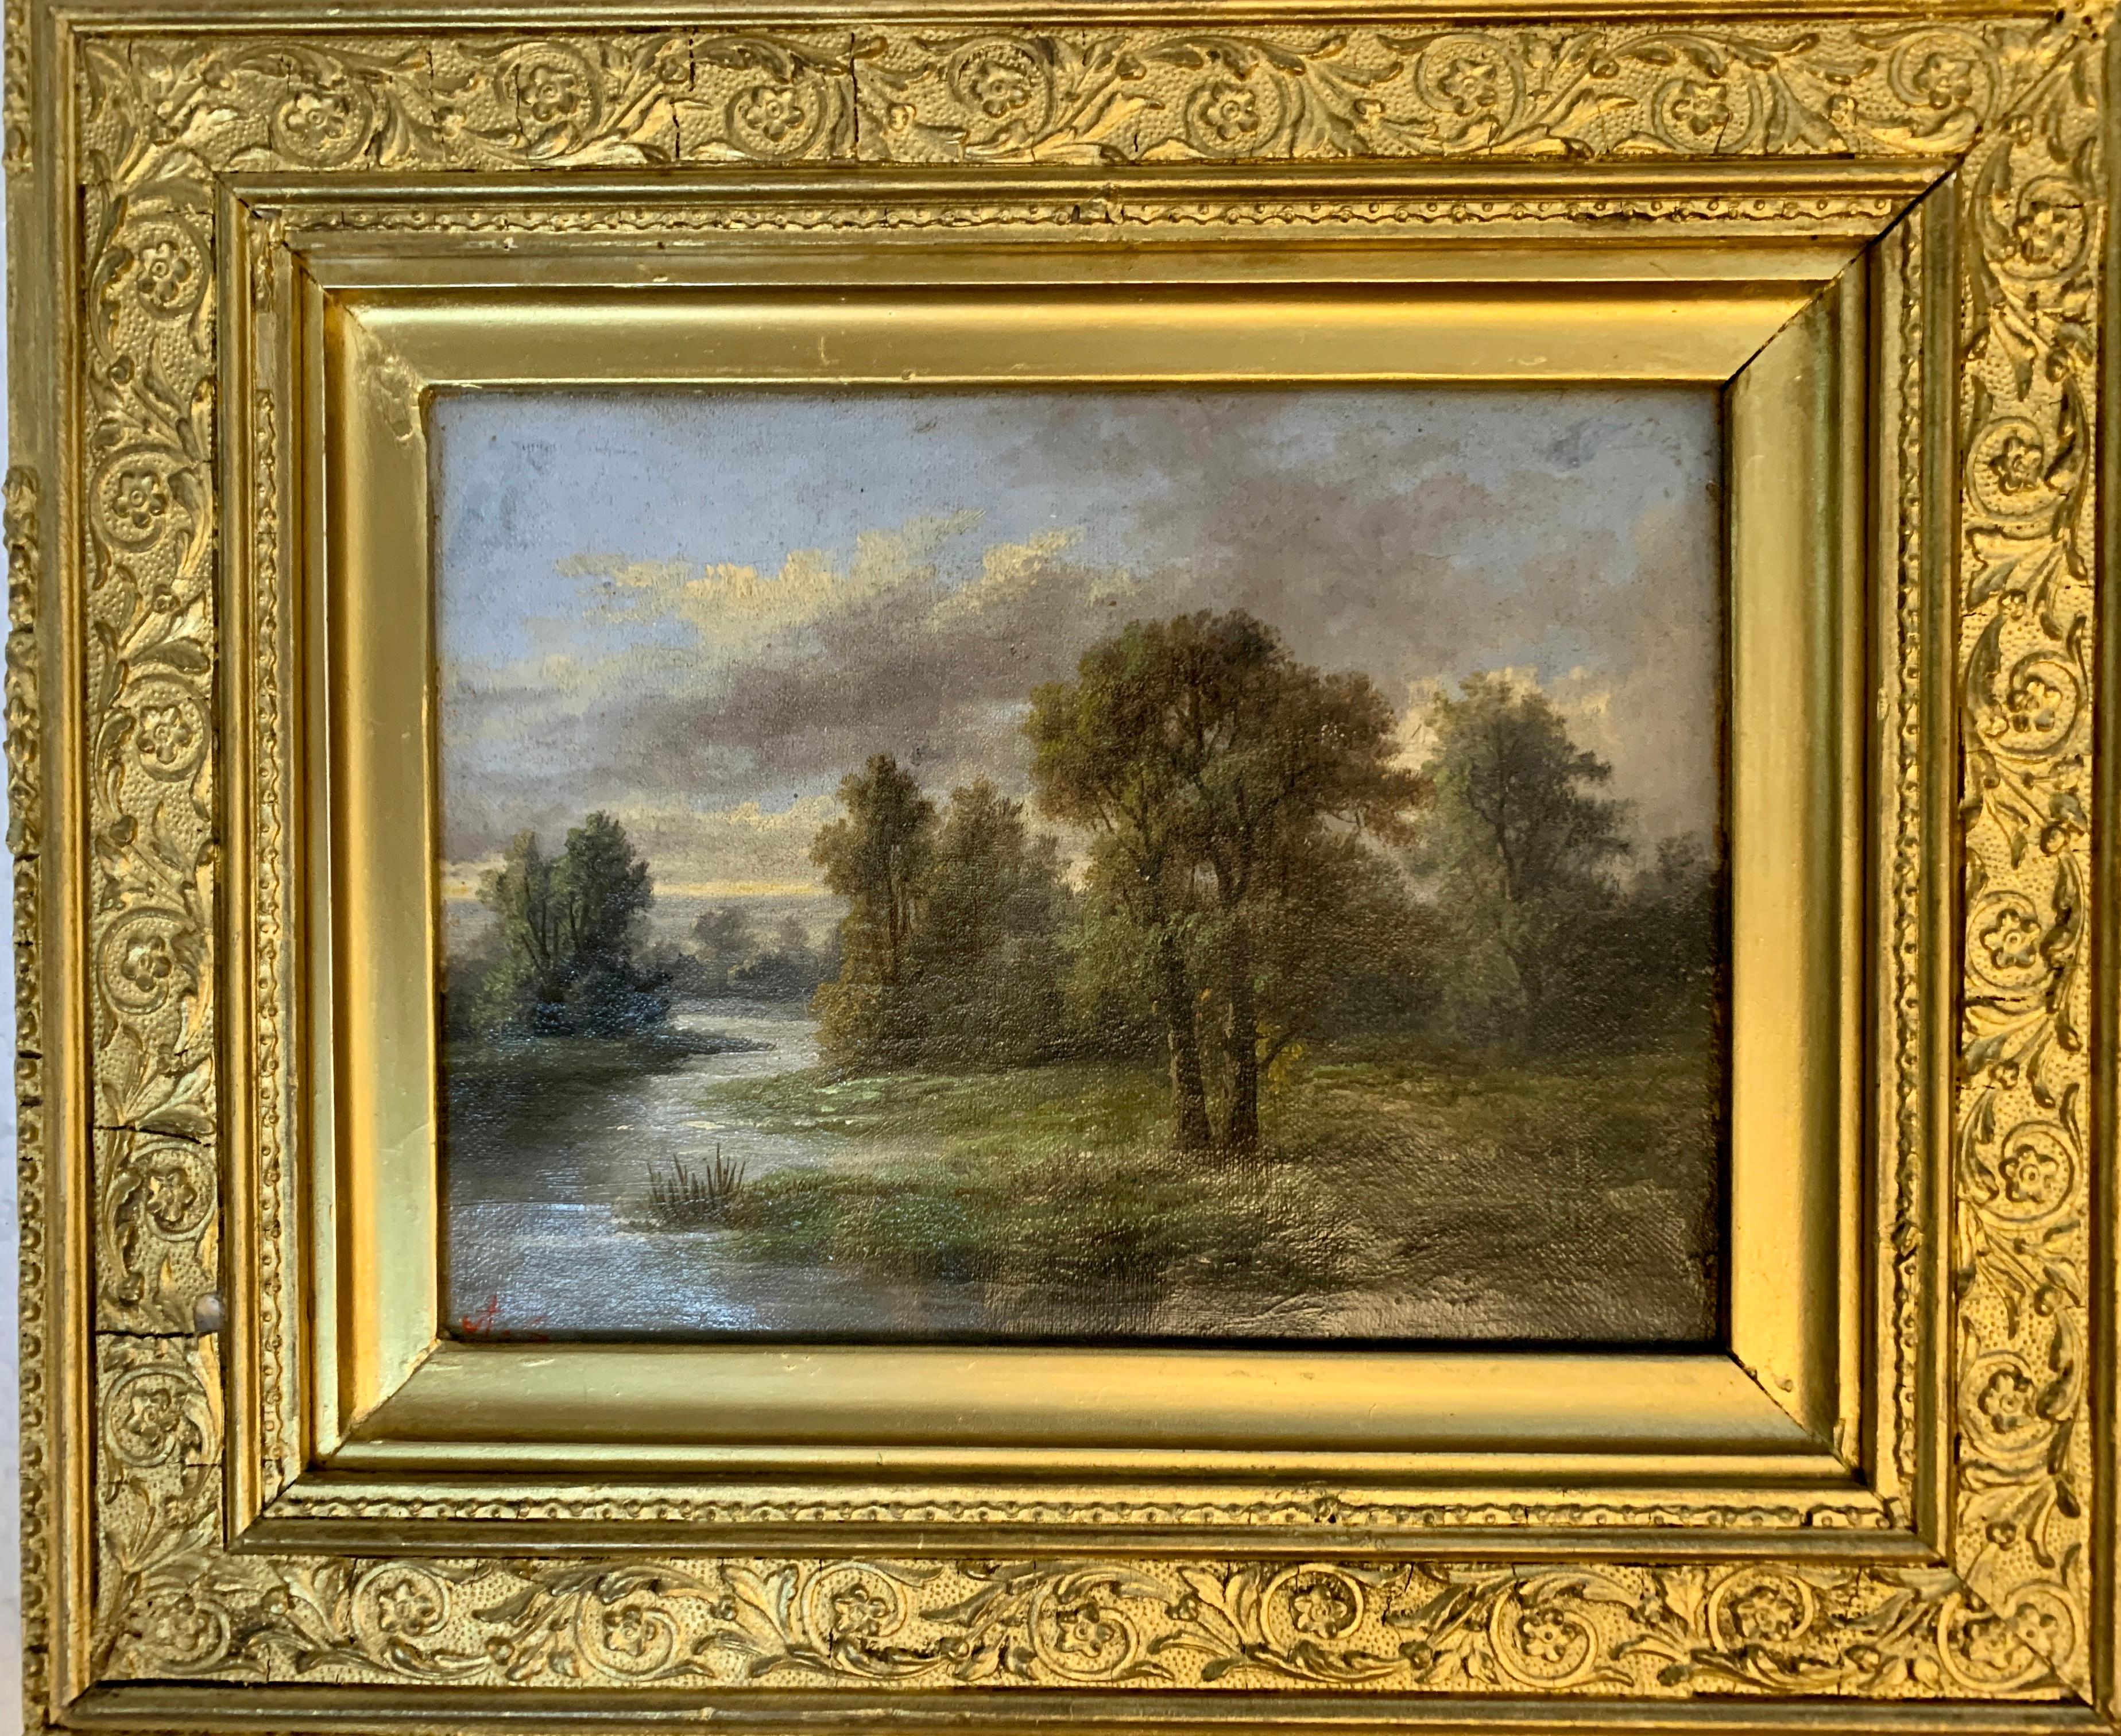 Englische Landschaft des 19. Jahrhunderts mit Eichen- und Eichenholzbäumen auf einem Weg nach einem Fluss – Painting von Ada Stone